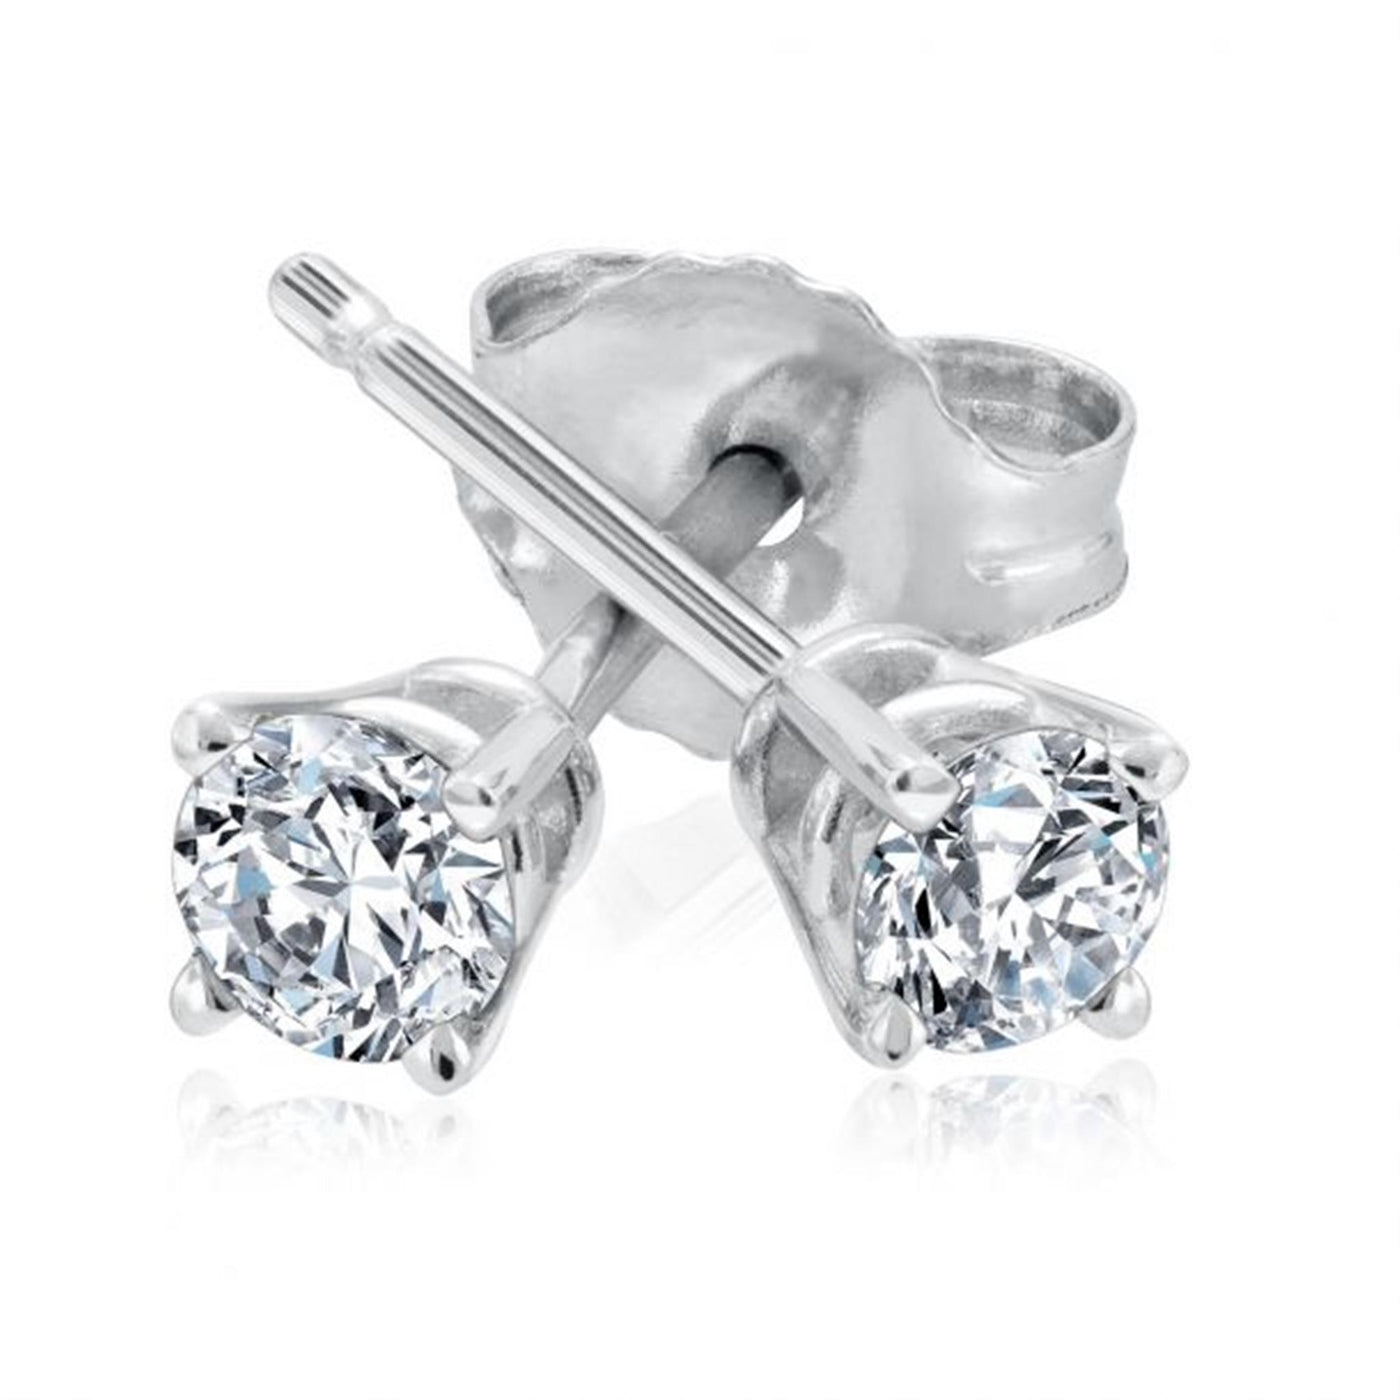 Estate,14K White Gold 0.34ctw Diamond Stud Earrings in Four Prong Basket Settings